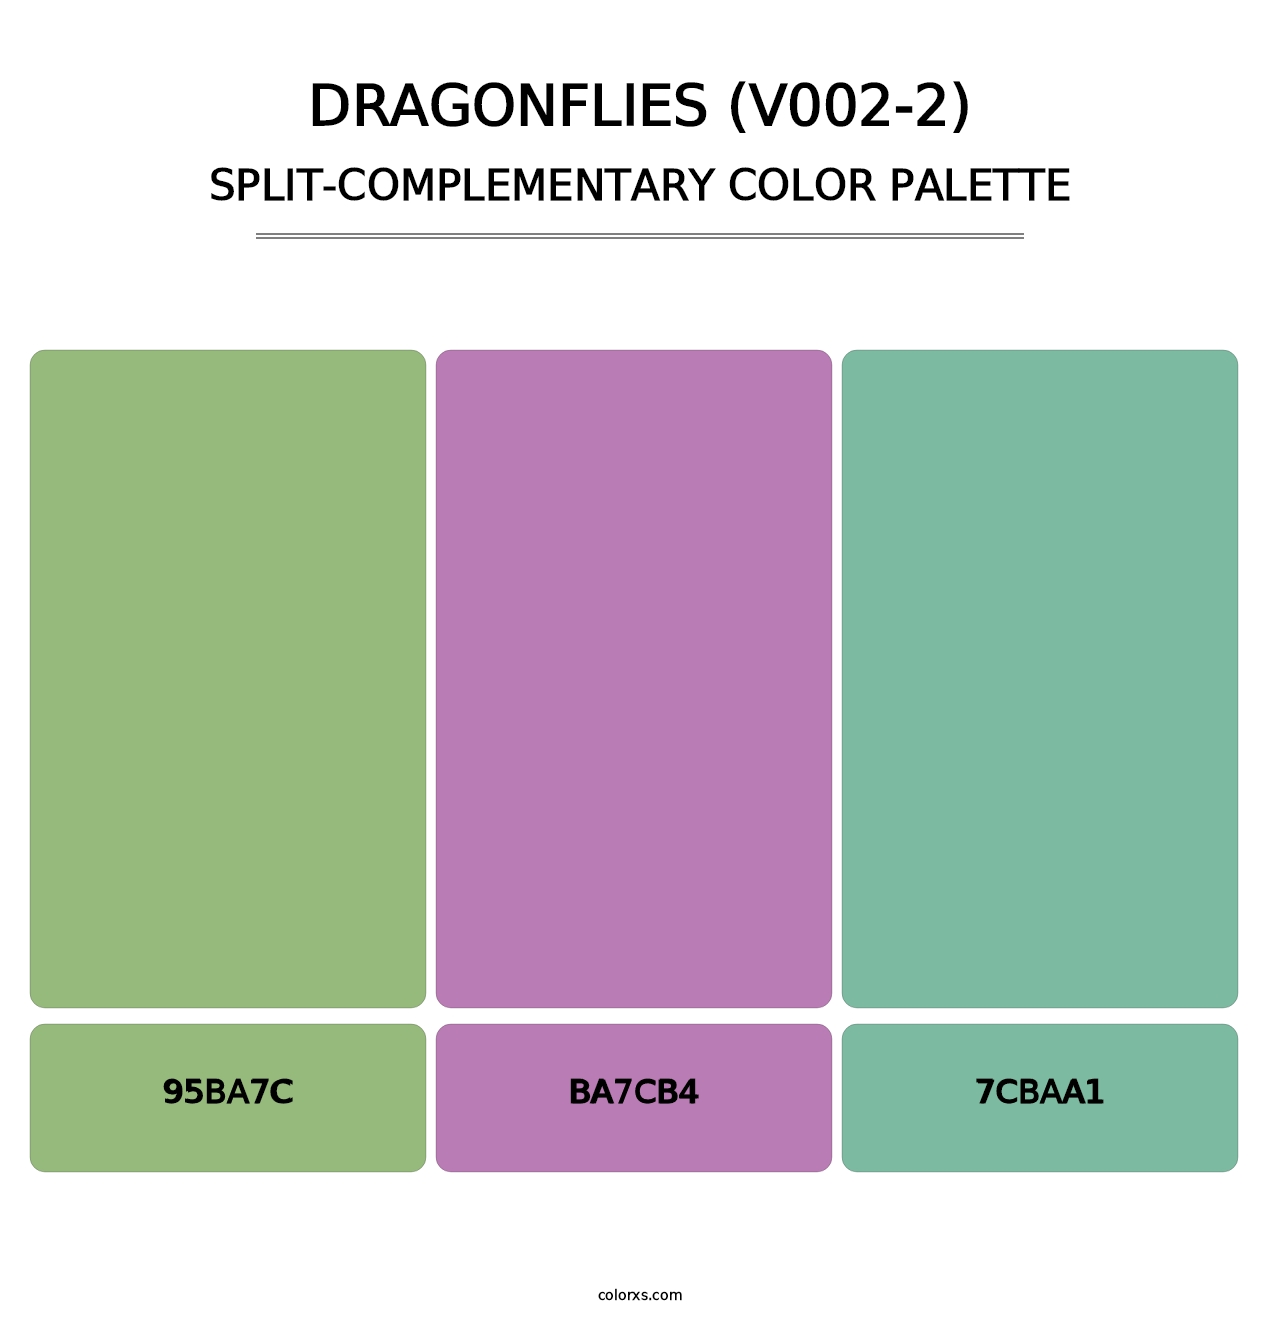 Dragonflies (V002-2) - Split-Complementary Color Palette